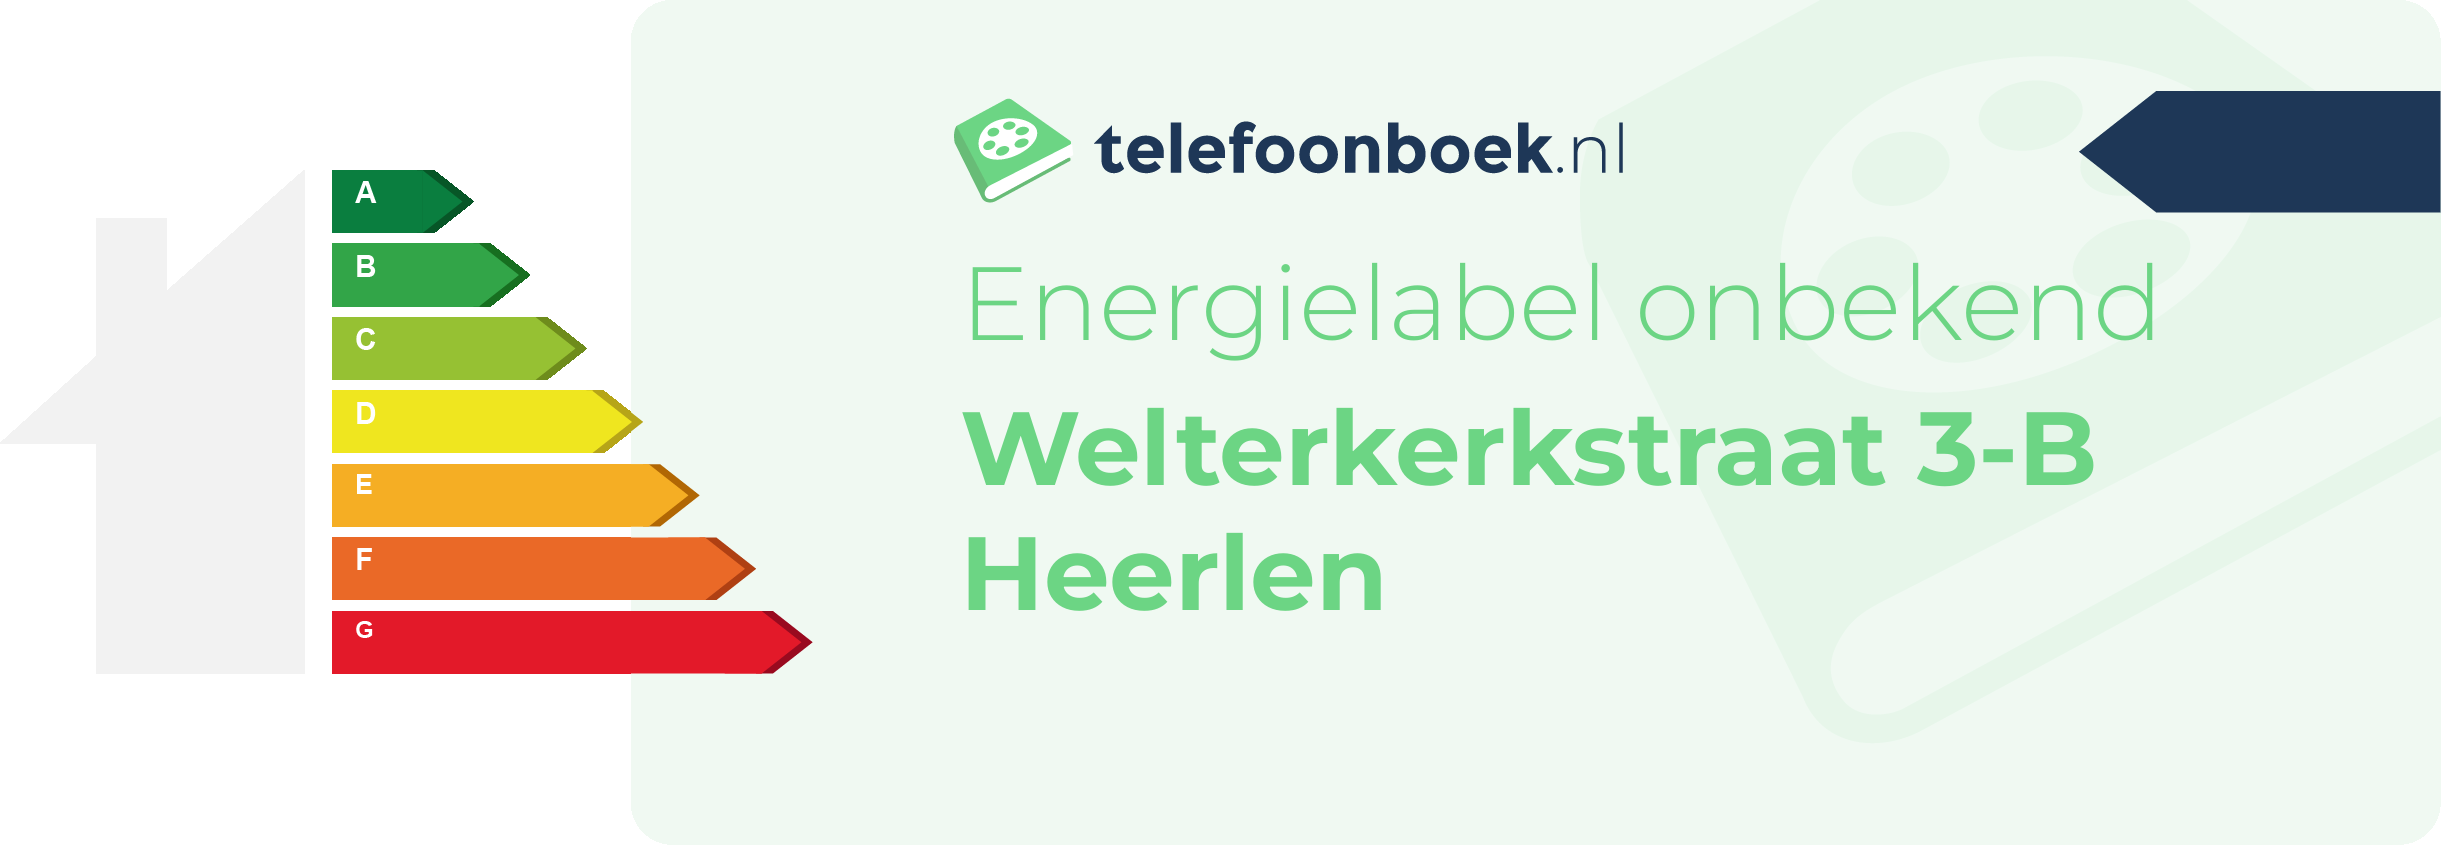 Energielabel Welterkerkstraat 3-B Heerlen